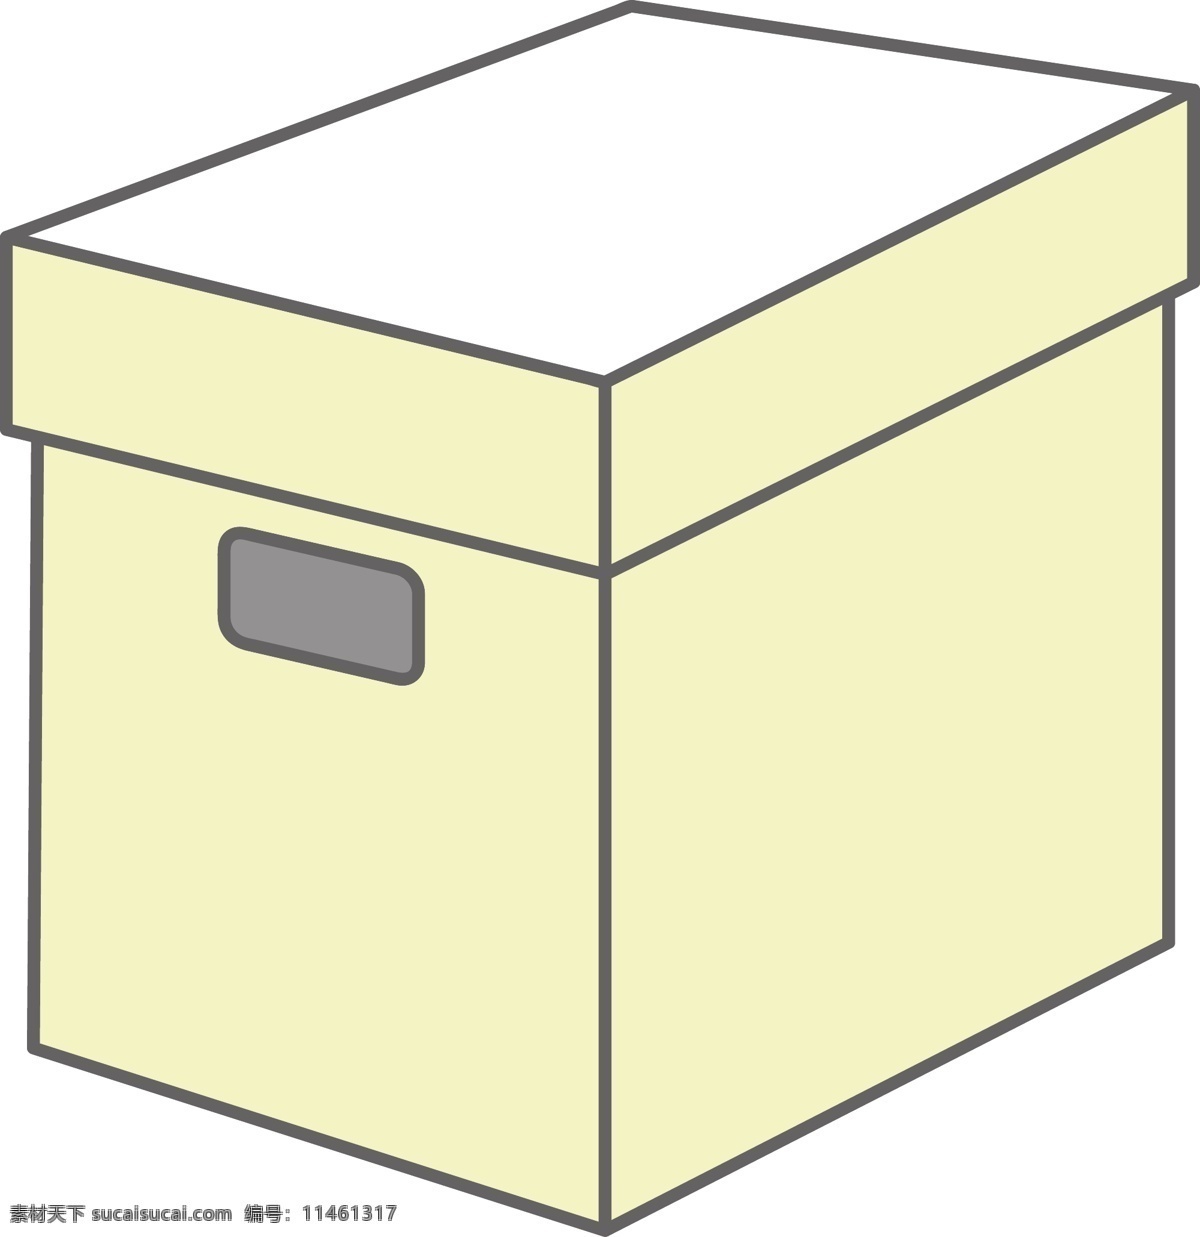 卡通 黄色 纸箱 插图 黄色的纸箱 收纳物品 办公用品 储放东西 包裹箱 牛皮收纳箱 立体储物箱